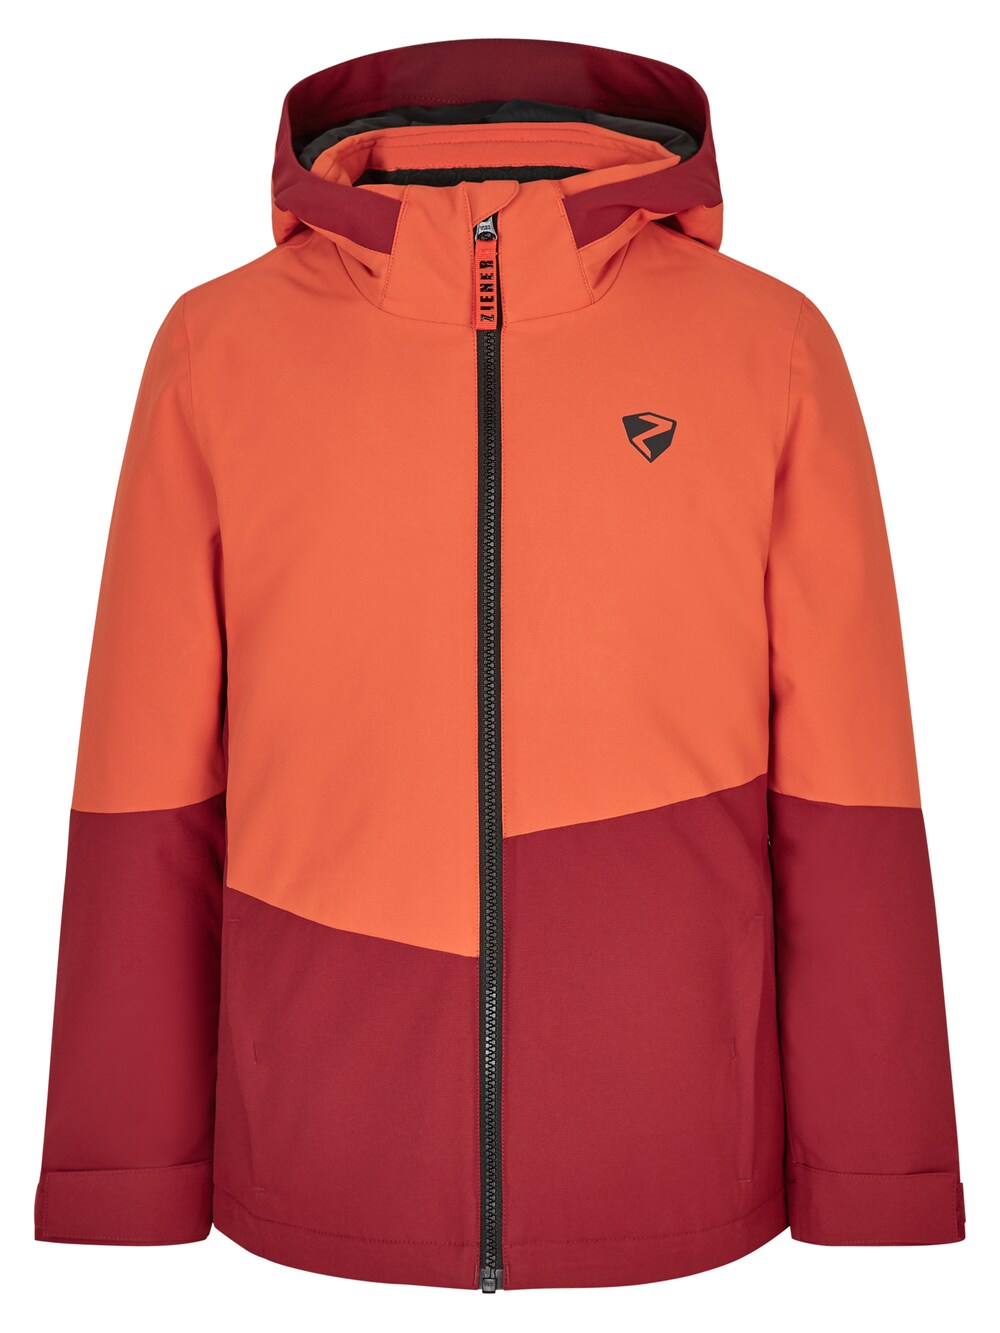 Спортивная куртка Ziener Avak, оранжево-красный спортивная куртка ziener avak фиолетовый